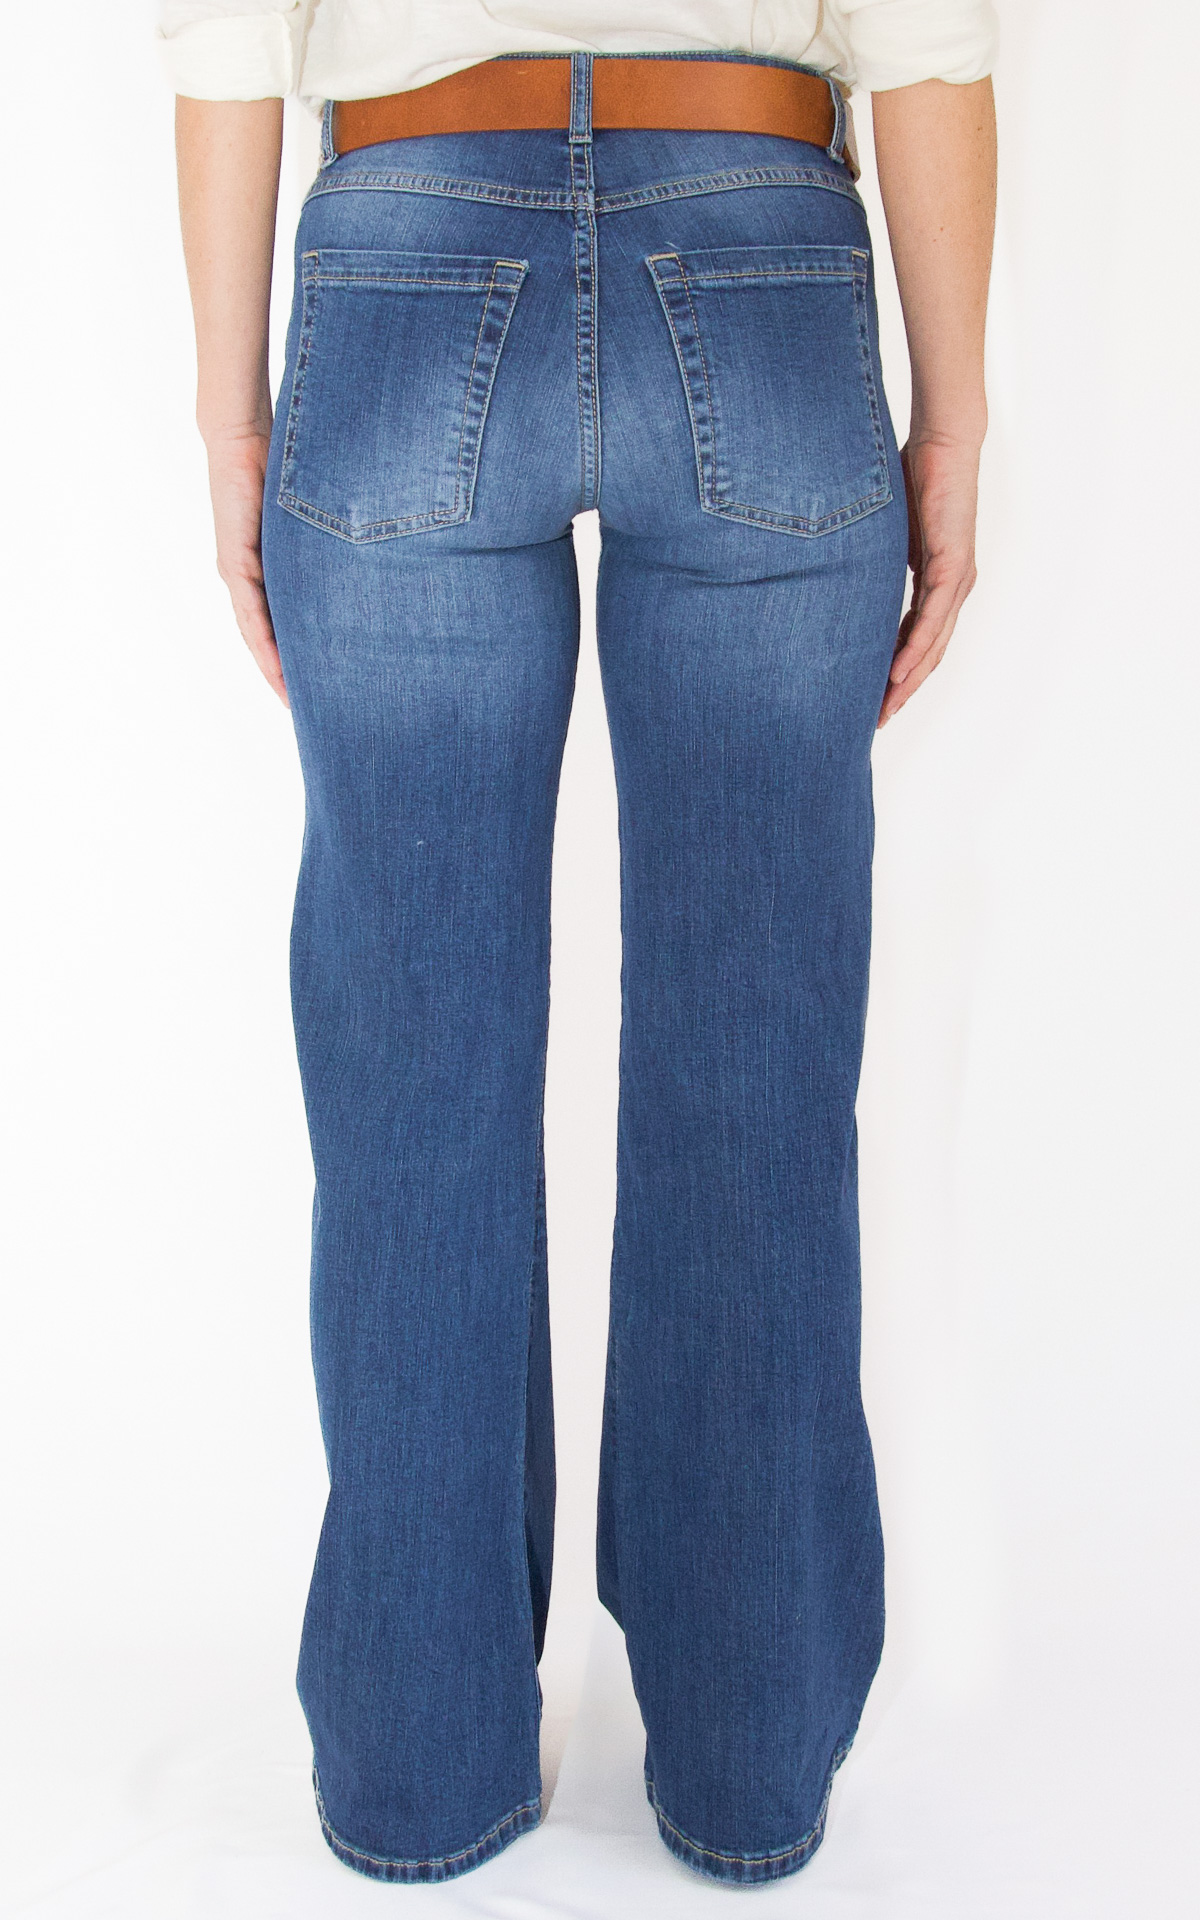 Initial - jeans zampa - SVEVA